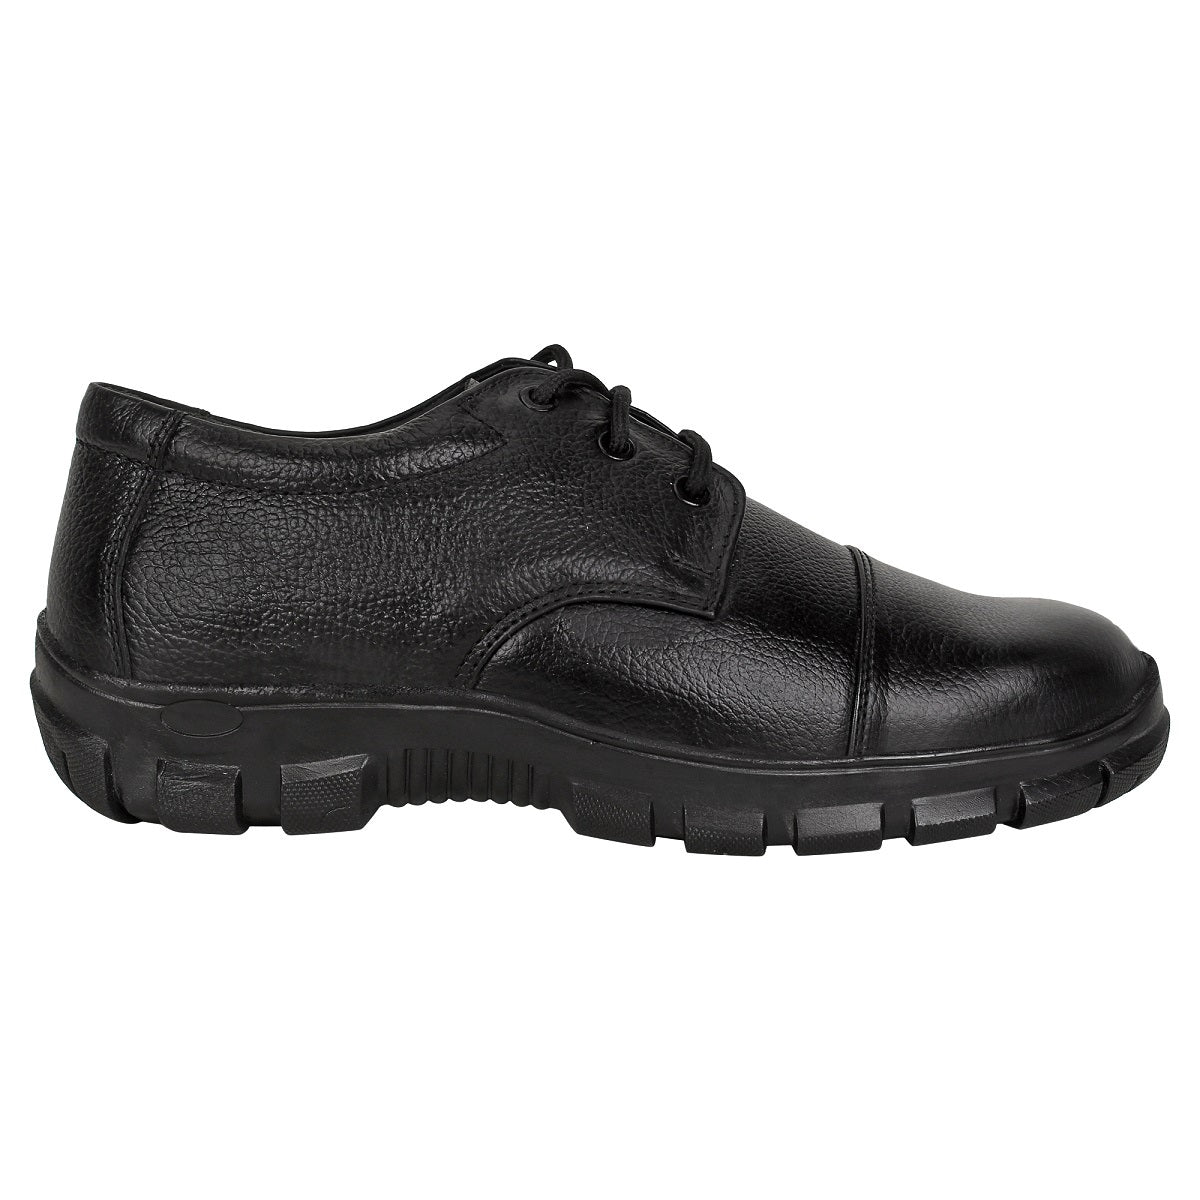 Formal Safety Shoes for Men - Defective